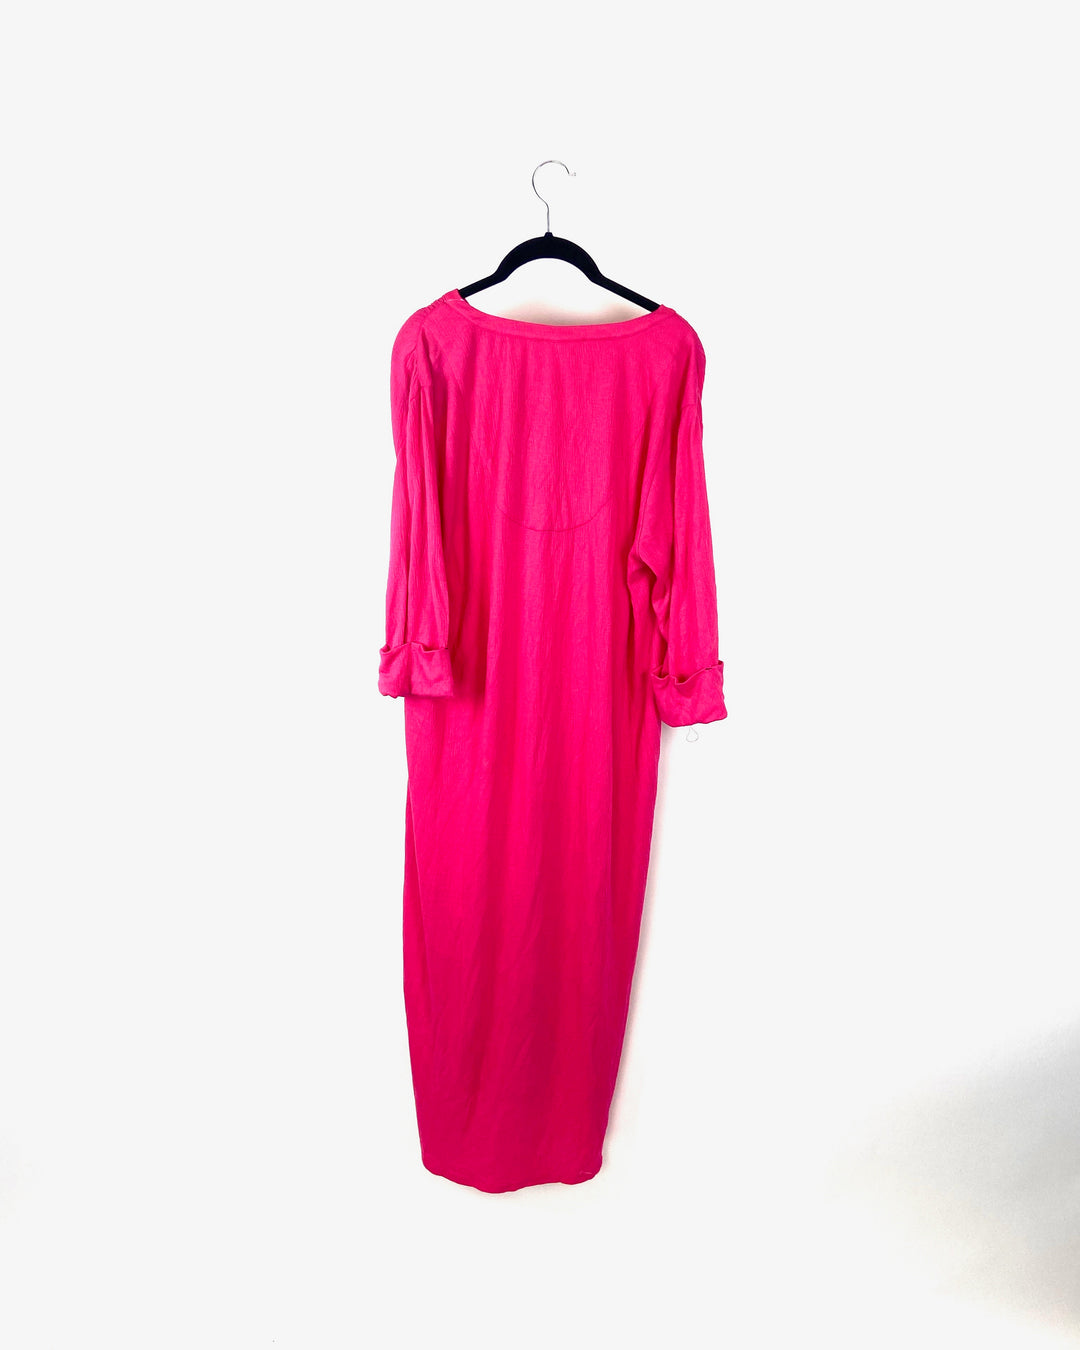 Hot Pink Lounge Dress - Small